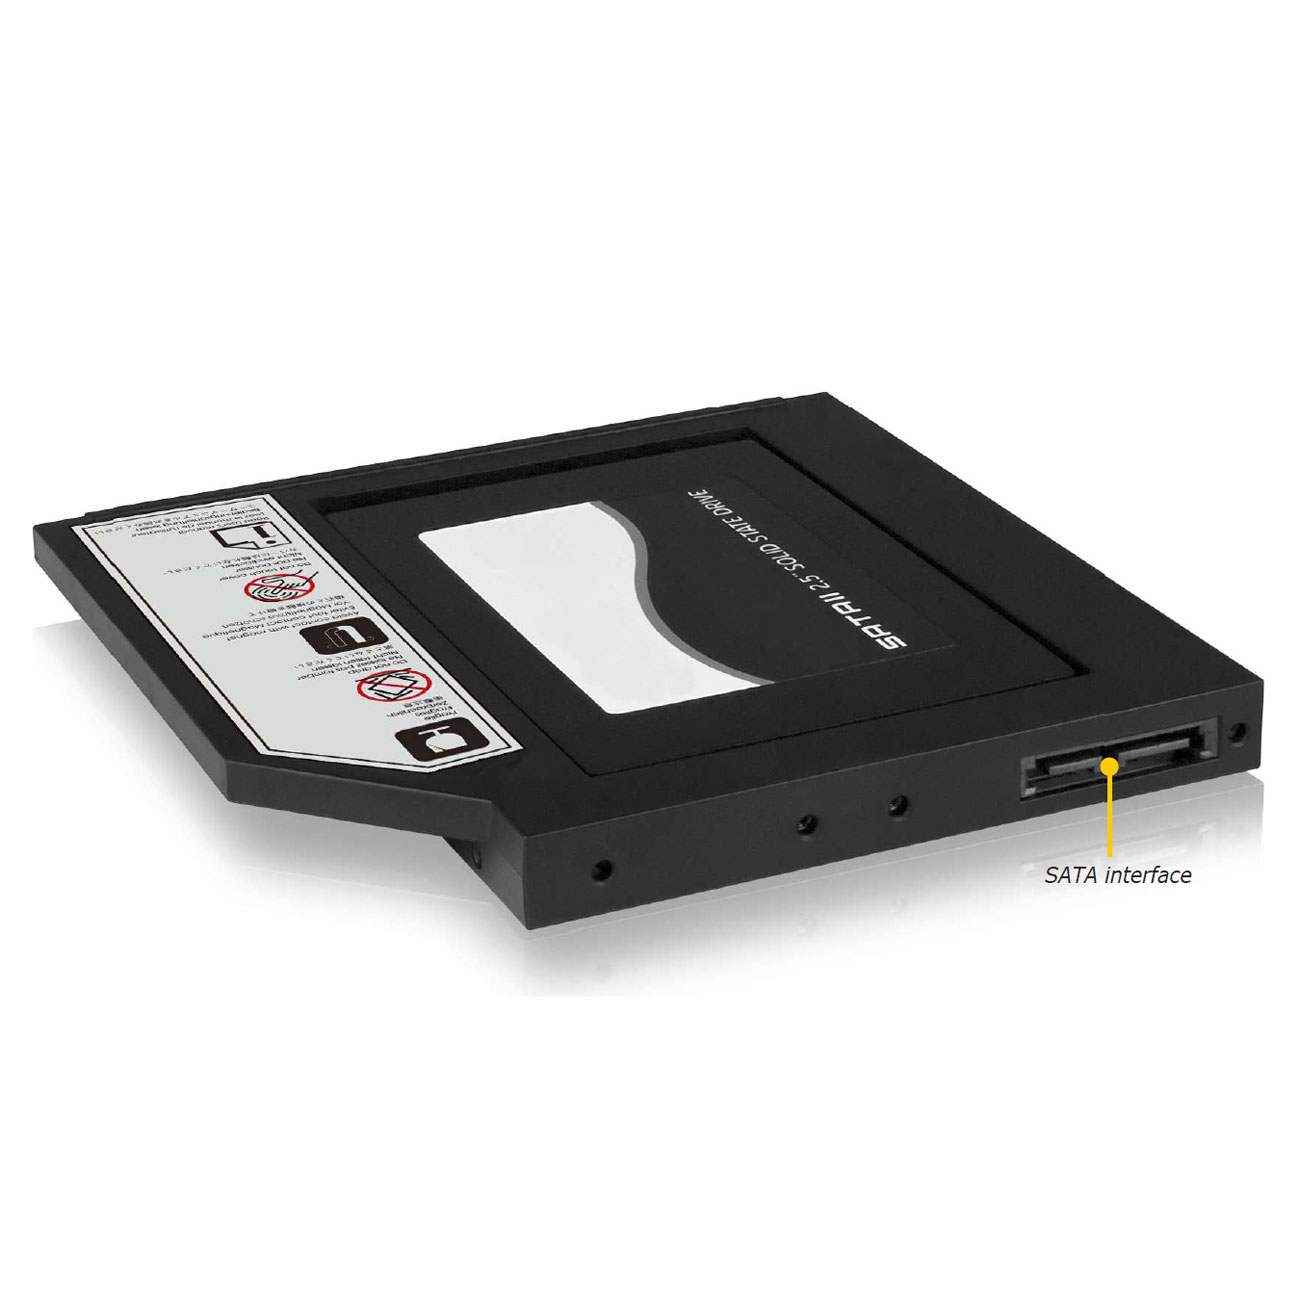 Adaptateur IB-AC642 pour disque HDD/SSD 2.5 pouces pour ordinateur portable + Botier externe pour graveur DVD Slim, informatique ile de la Runion 974